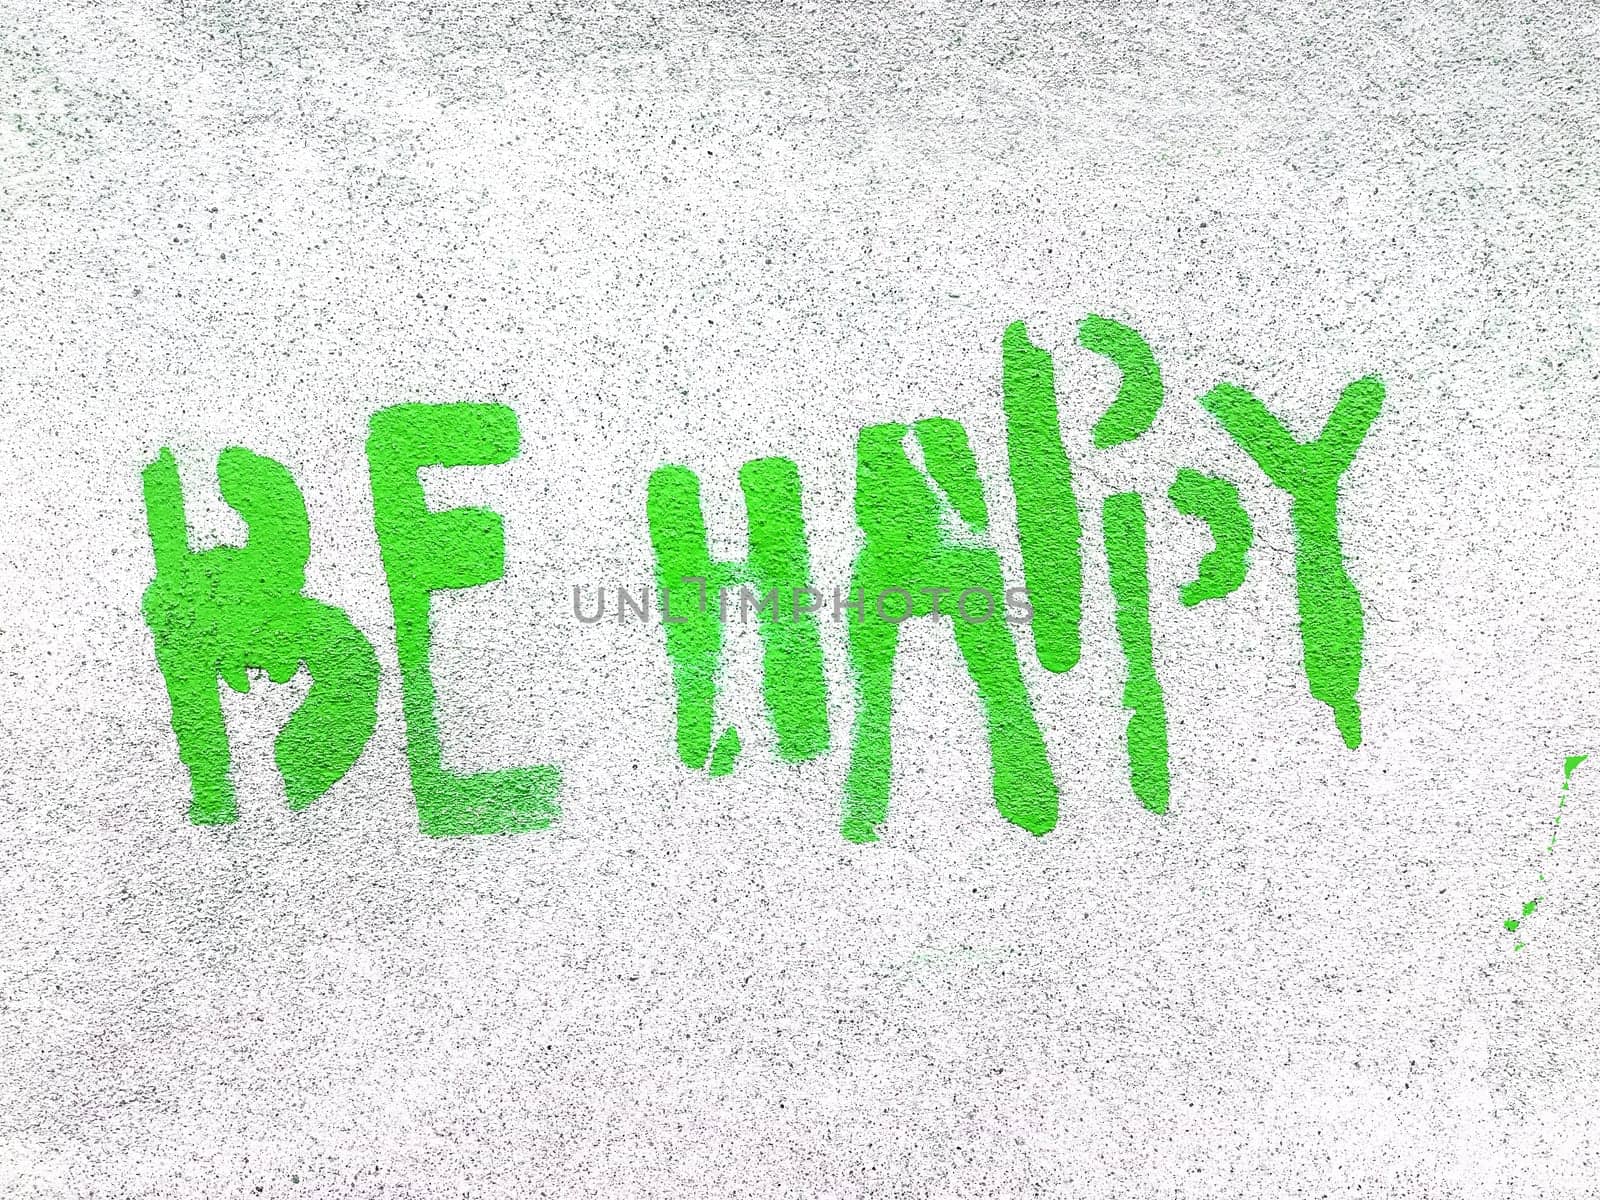 Green Be Happy written in graffiti style by germanopoli